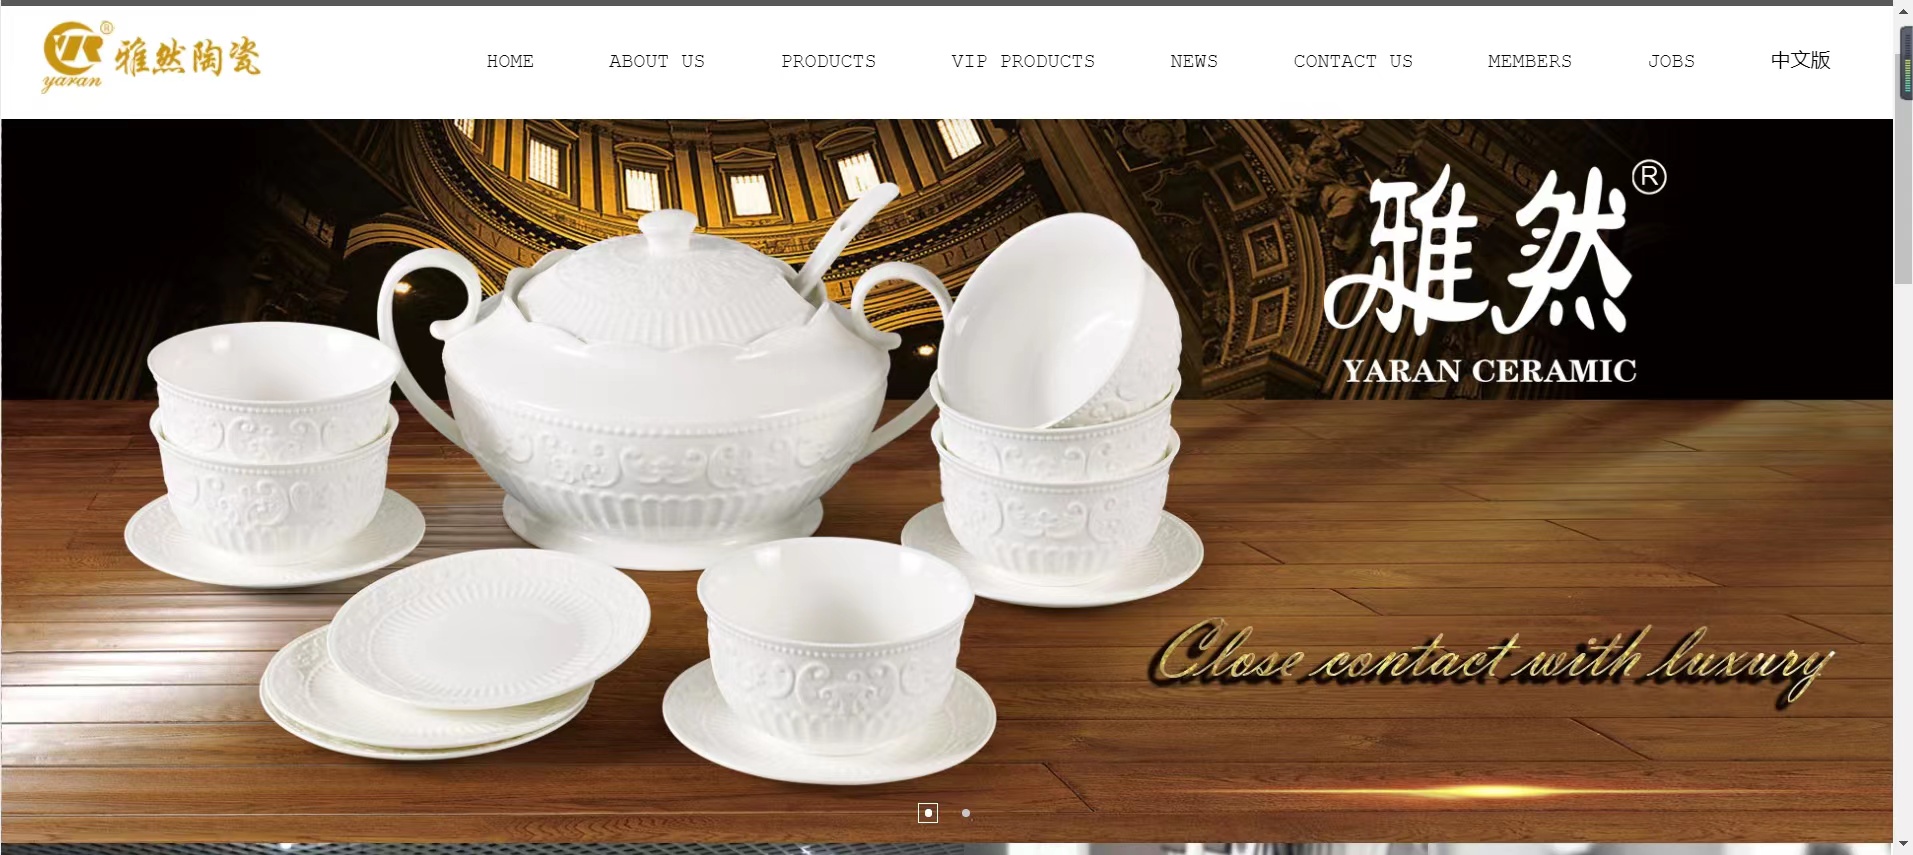 潮州雅然陶瓷工艺制作有限公司